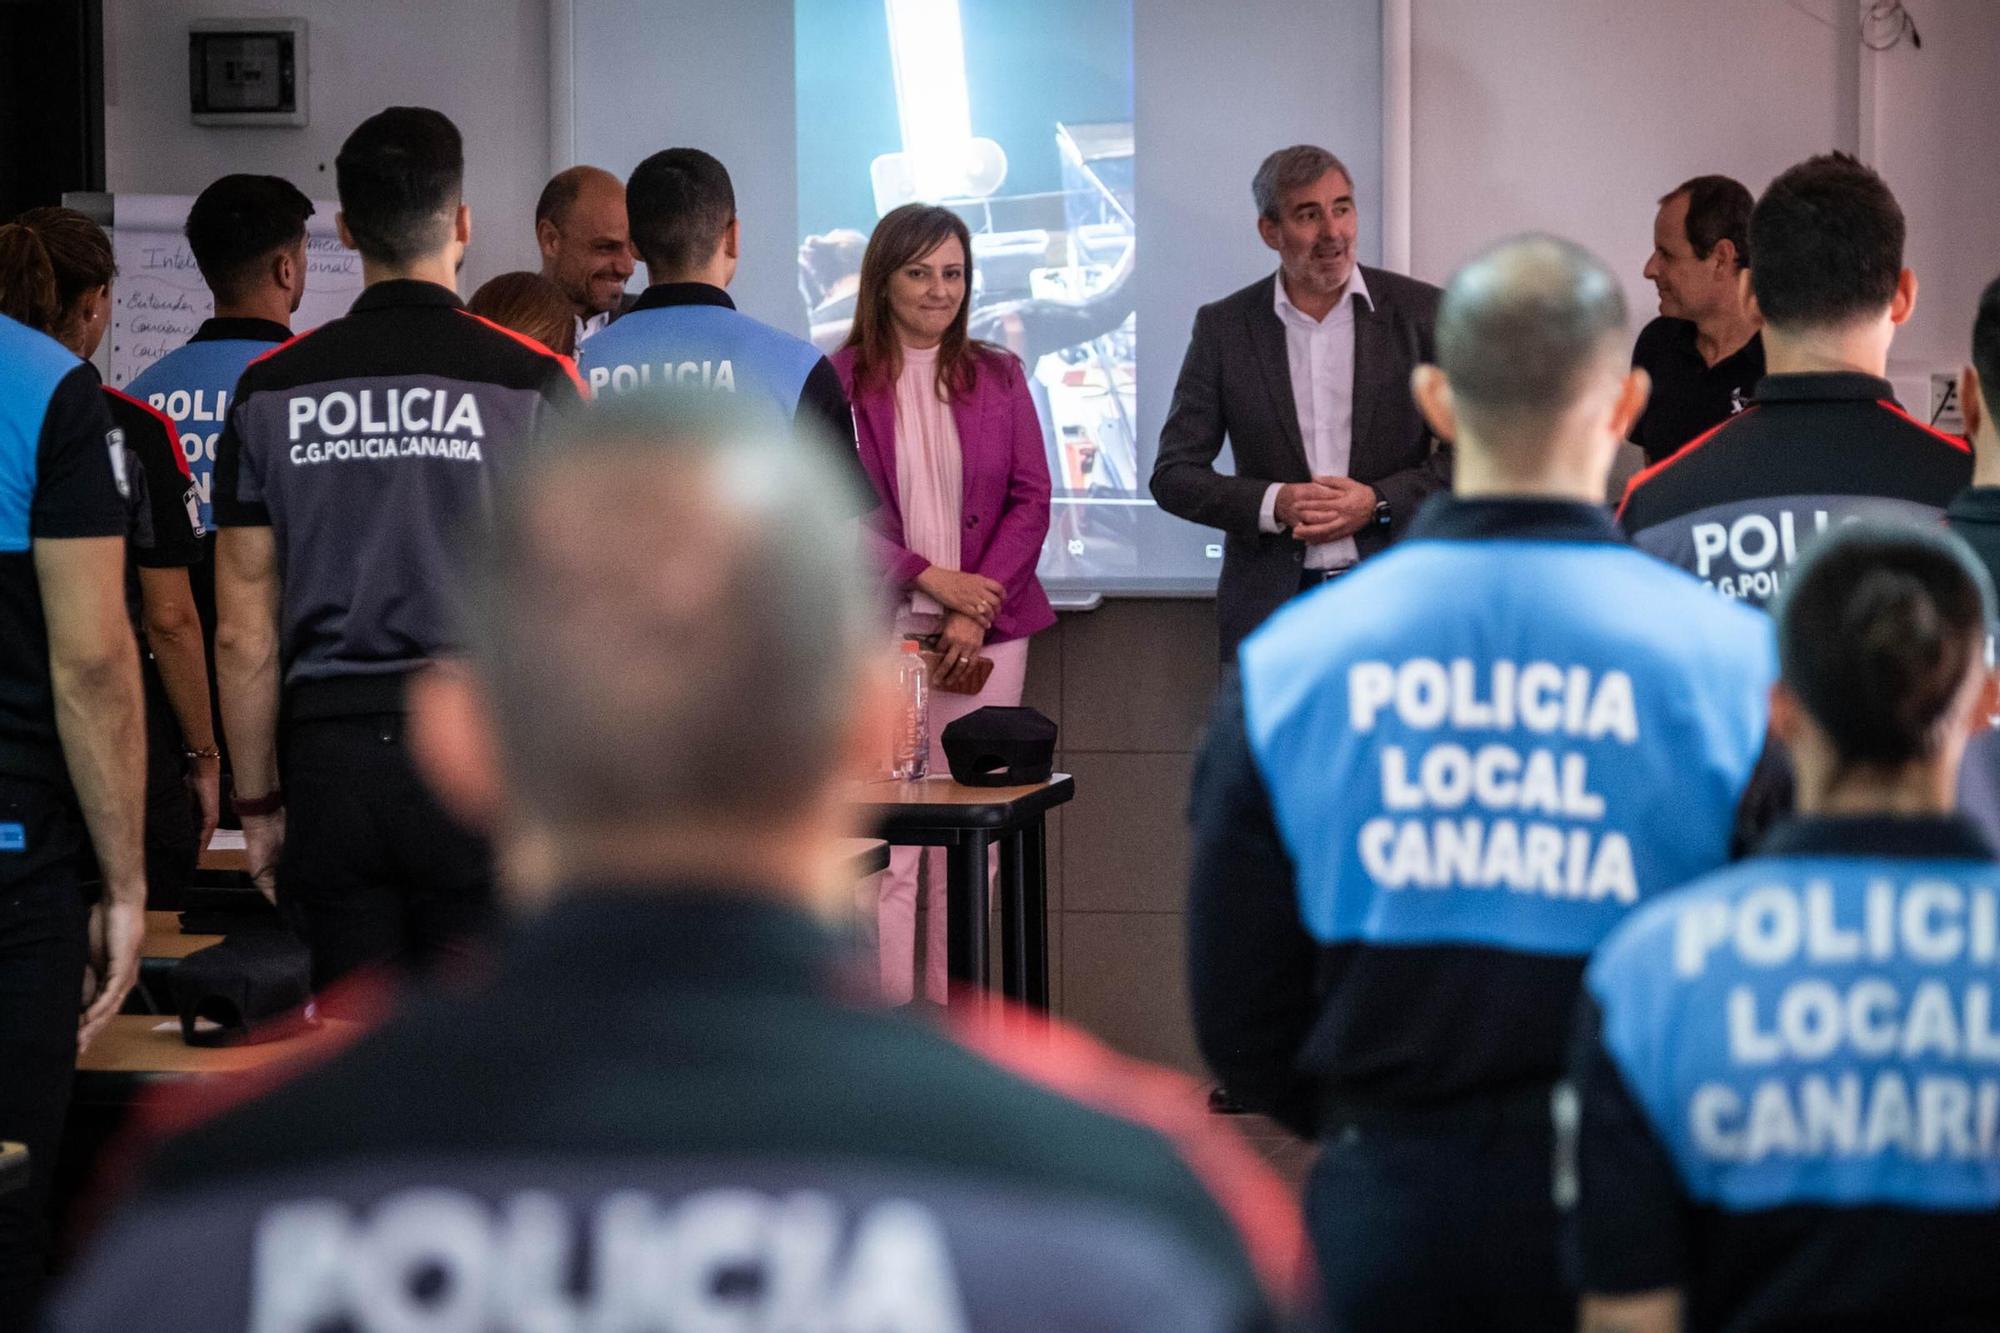 El presidente de Canarias visita la sede de la Policía Autonómica en Tenerife